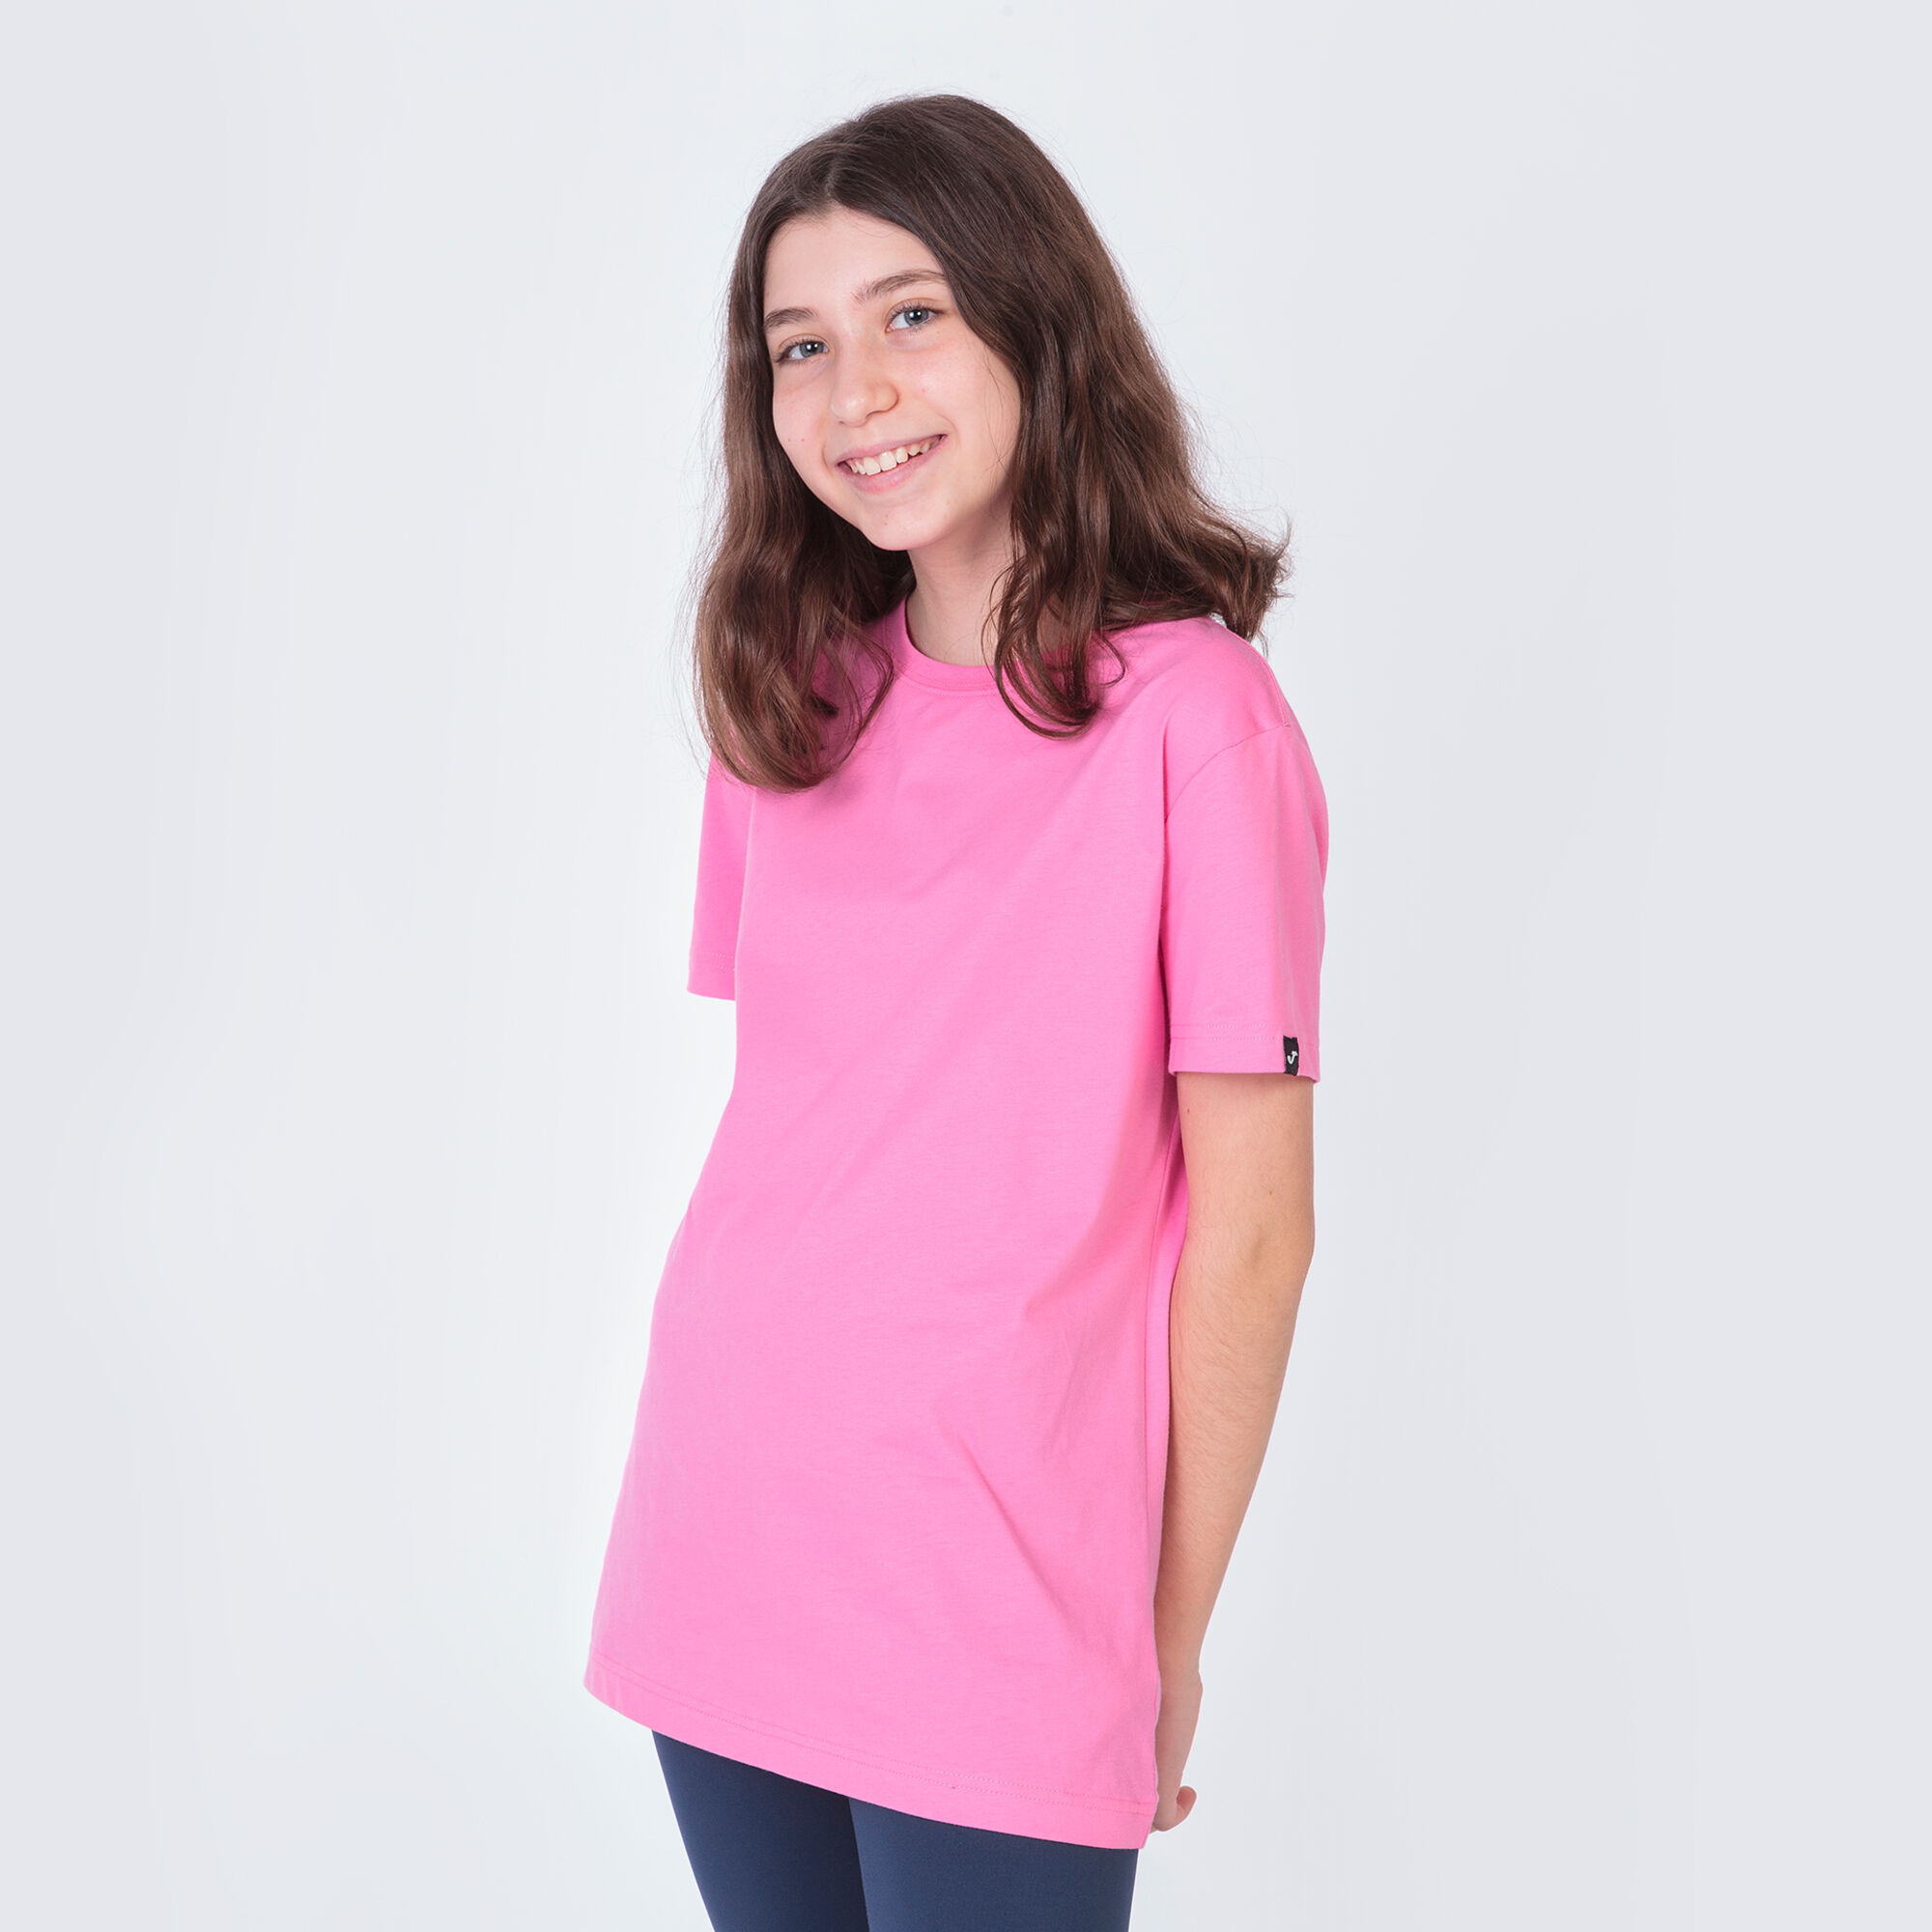 Camiseta manga corta mujer Desert rosa